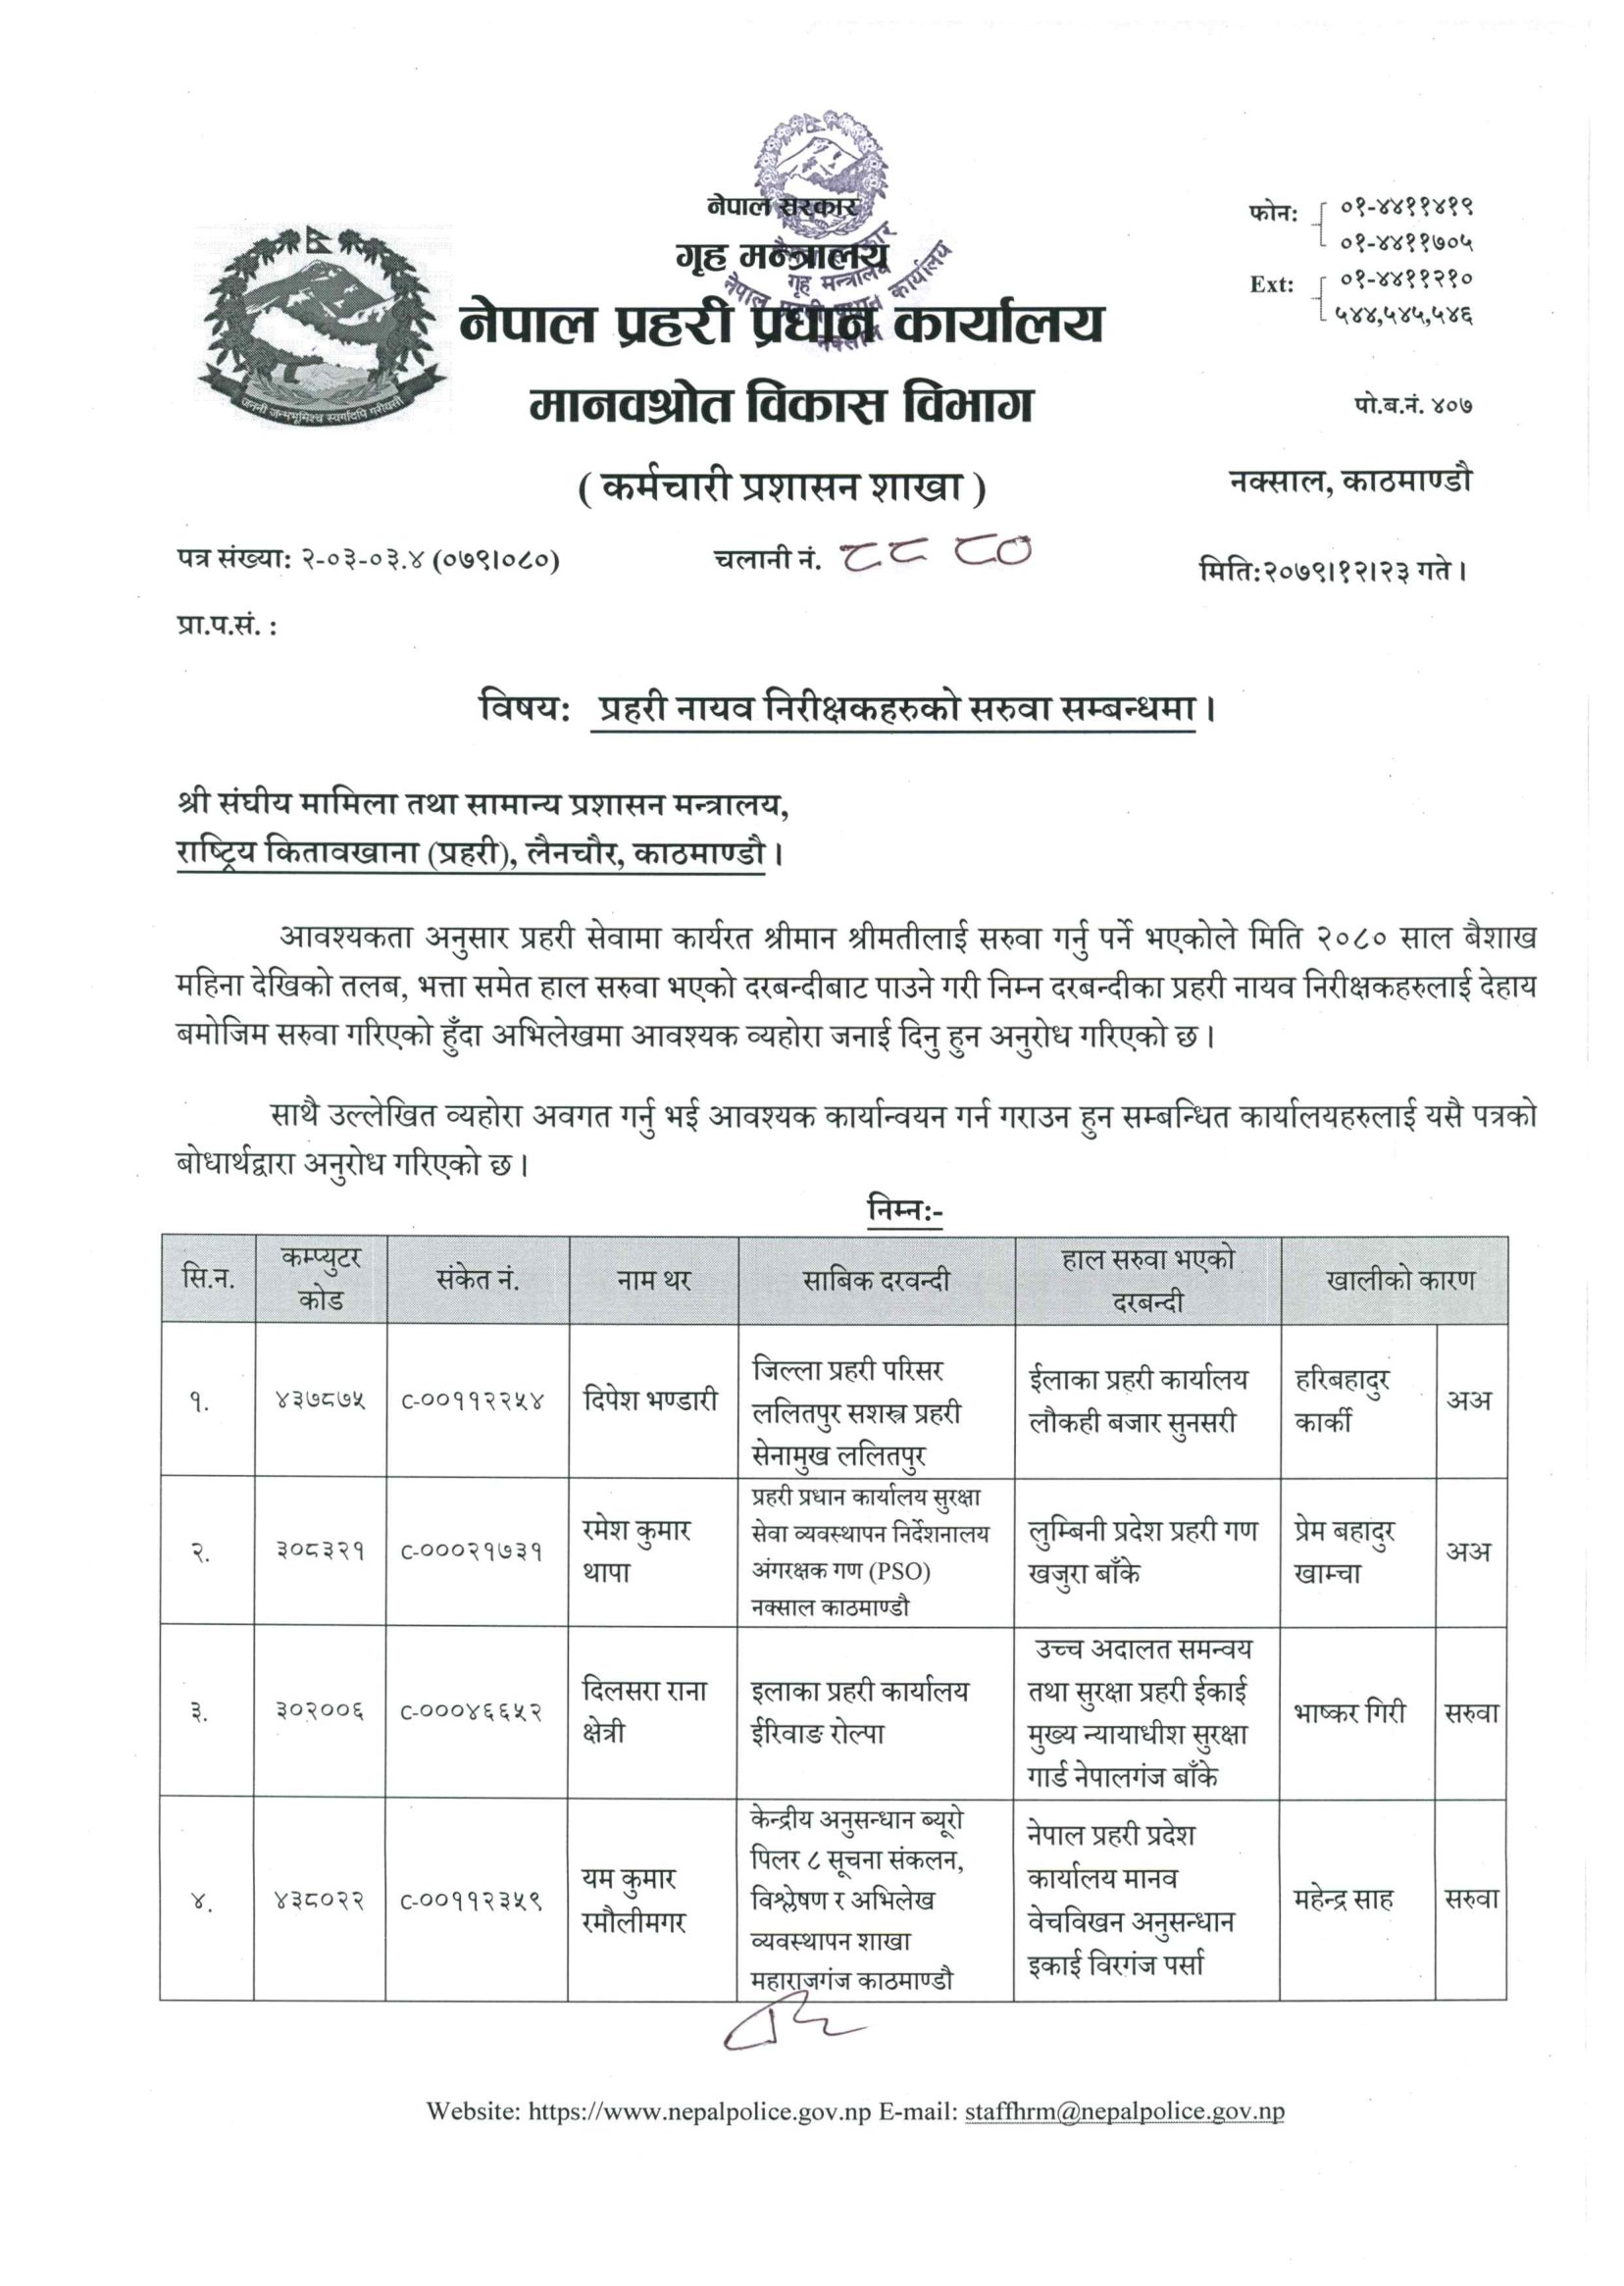 Nepal Police SI Transfer List